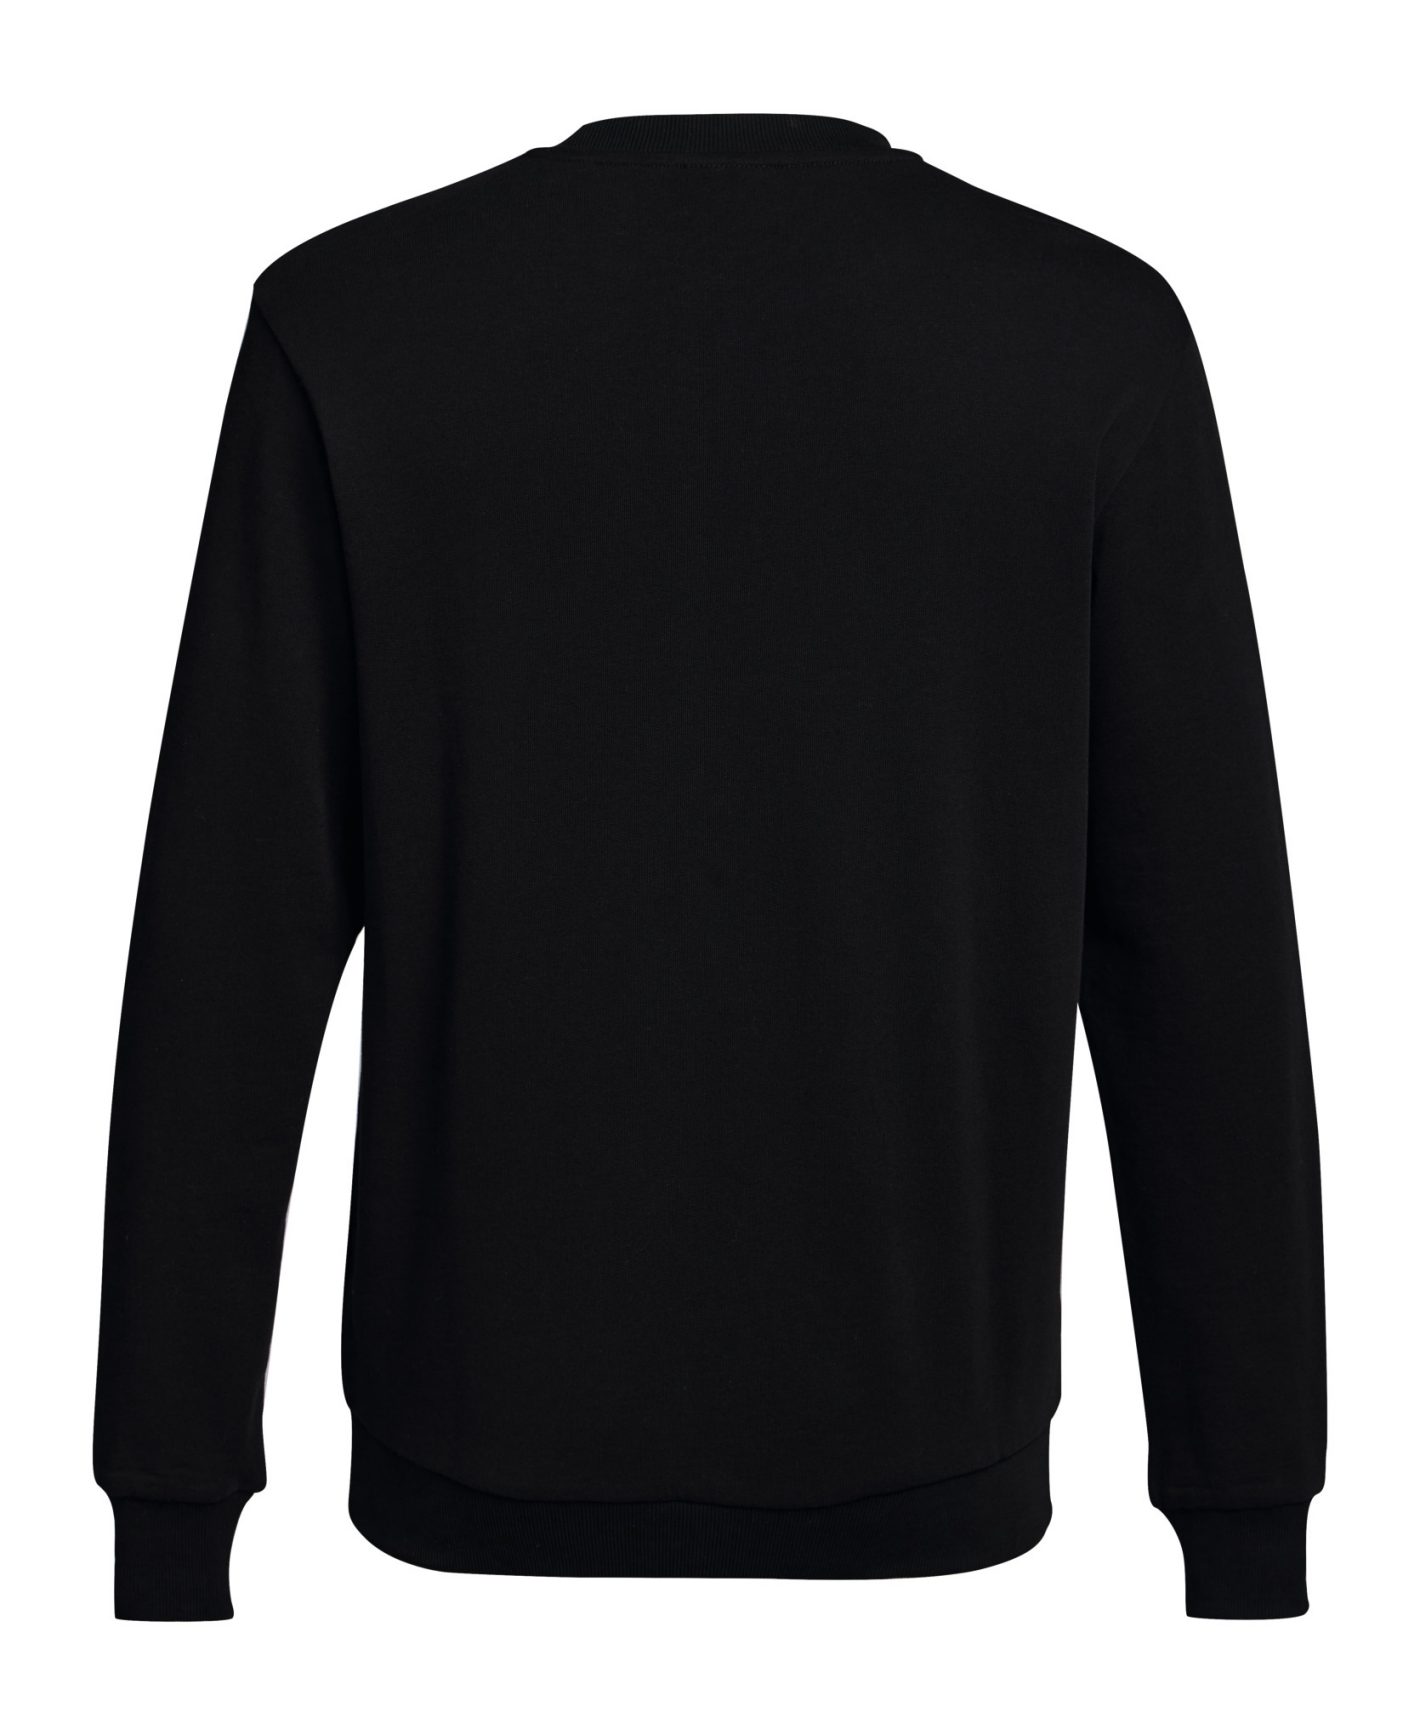 Stihl Black Logo Sweatshirt | Mowers2Go™ Garden Machinery